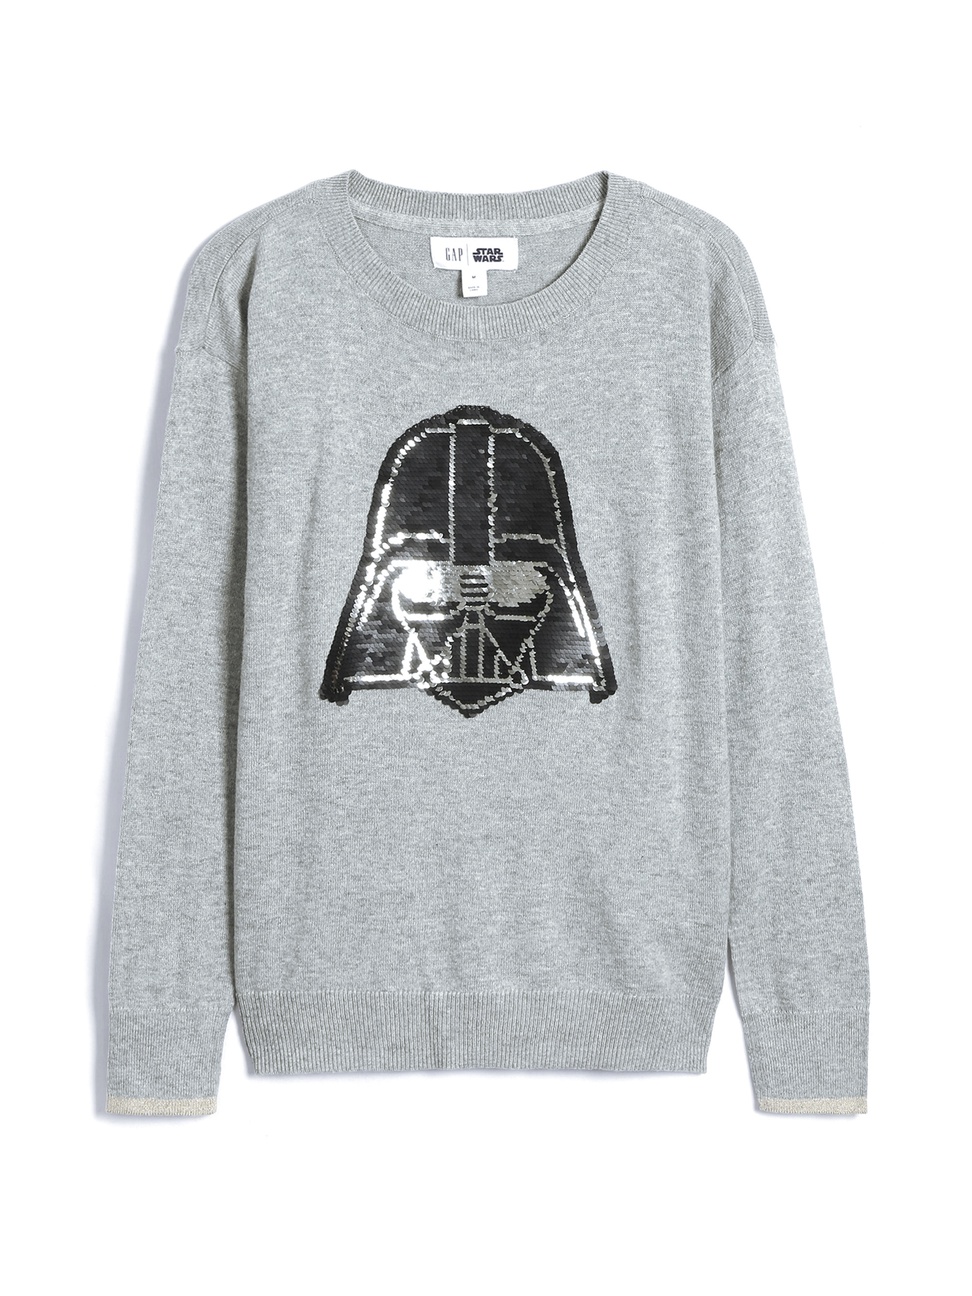 女童裝|Gap x Star Wars星際大戰聯名 雙面亮片長袖針織衫-麻灰色